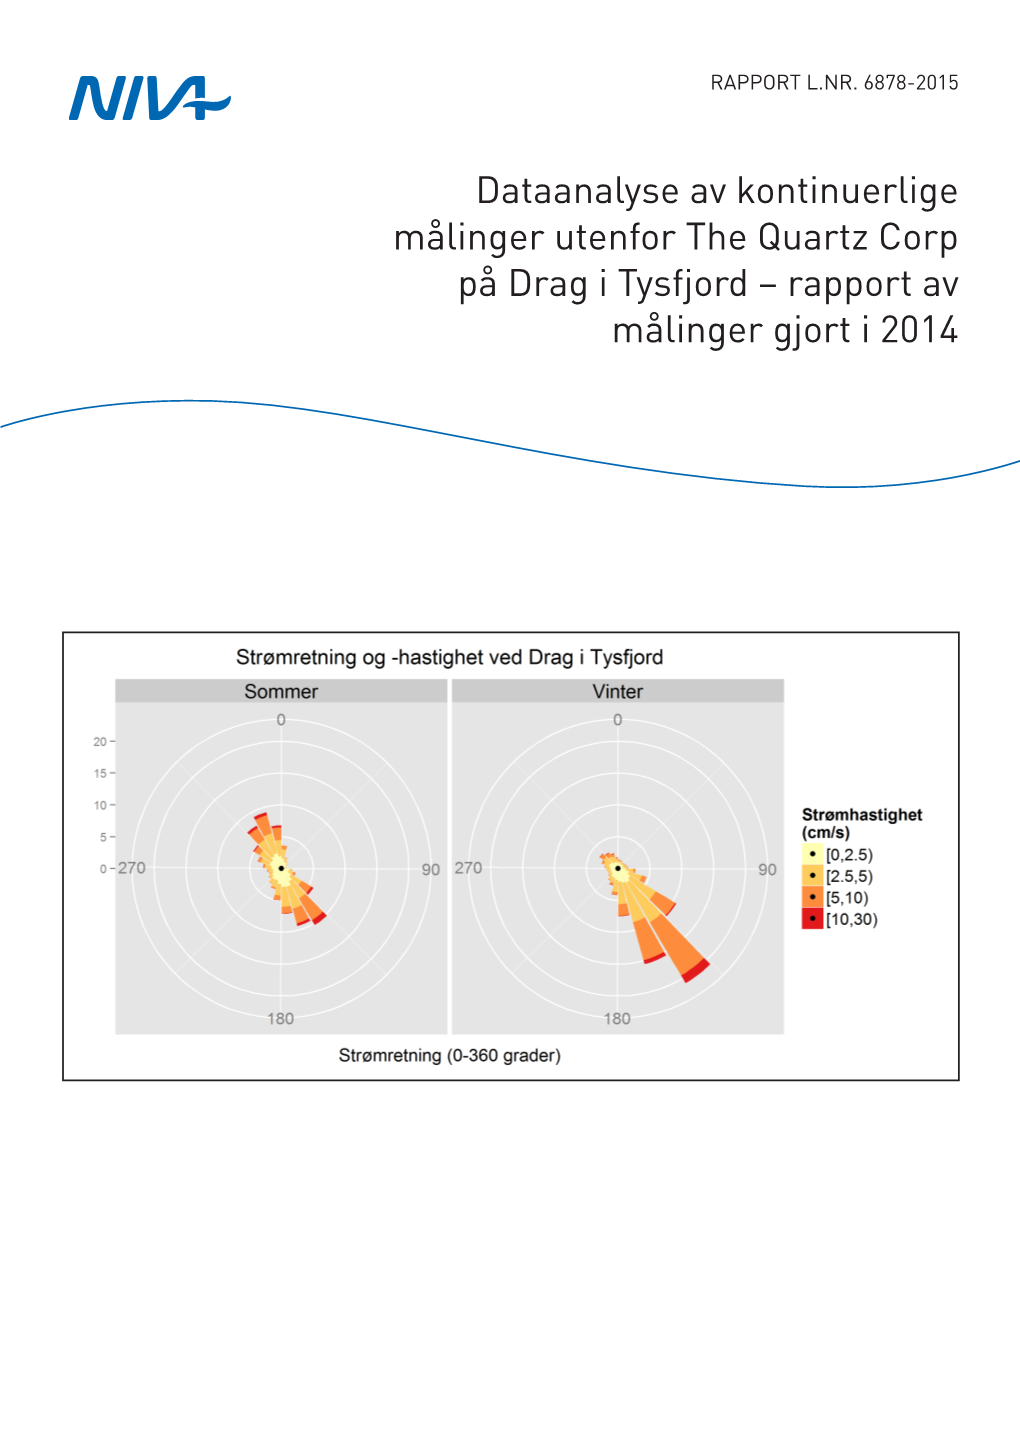 Dataanalyse Av Kontinuerlige Målinger Utenfor the Quartz Corp På Drag I Tysfjord – Rapport Av Målinger Gjort I 2014